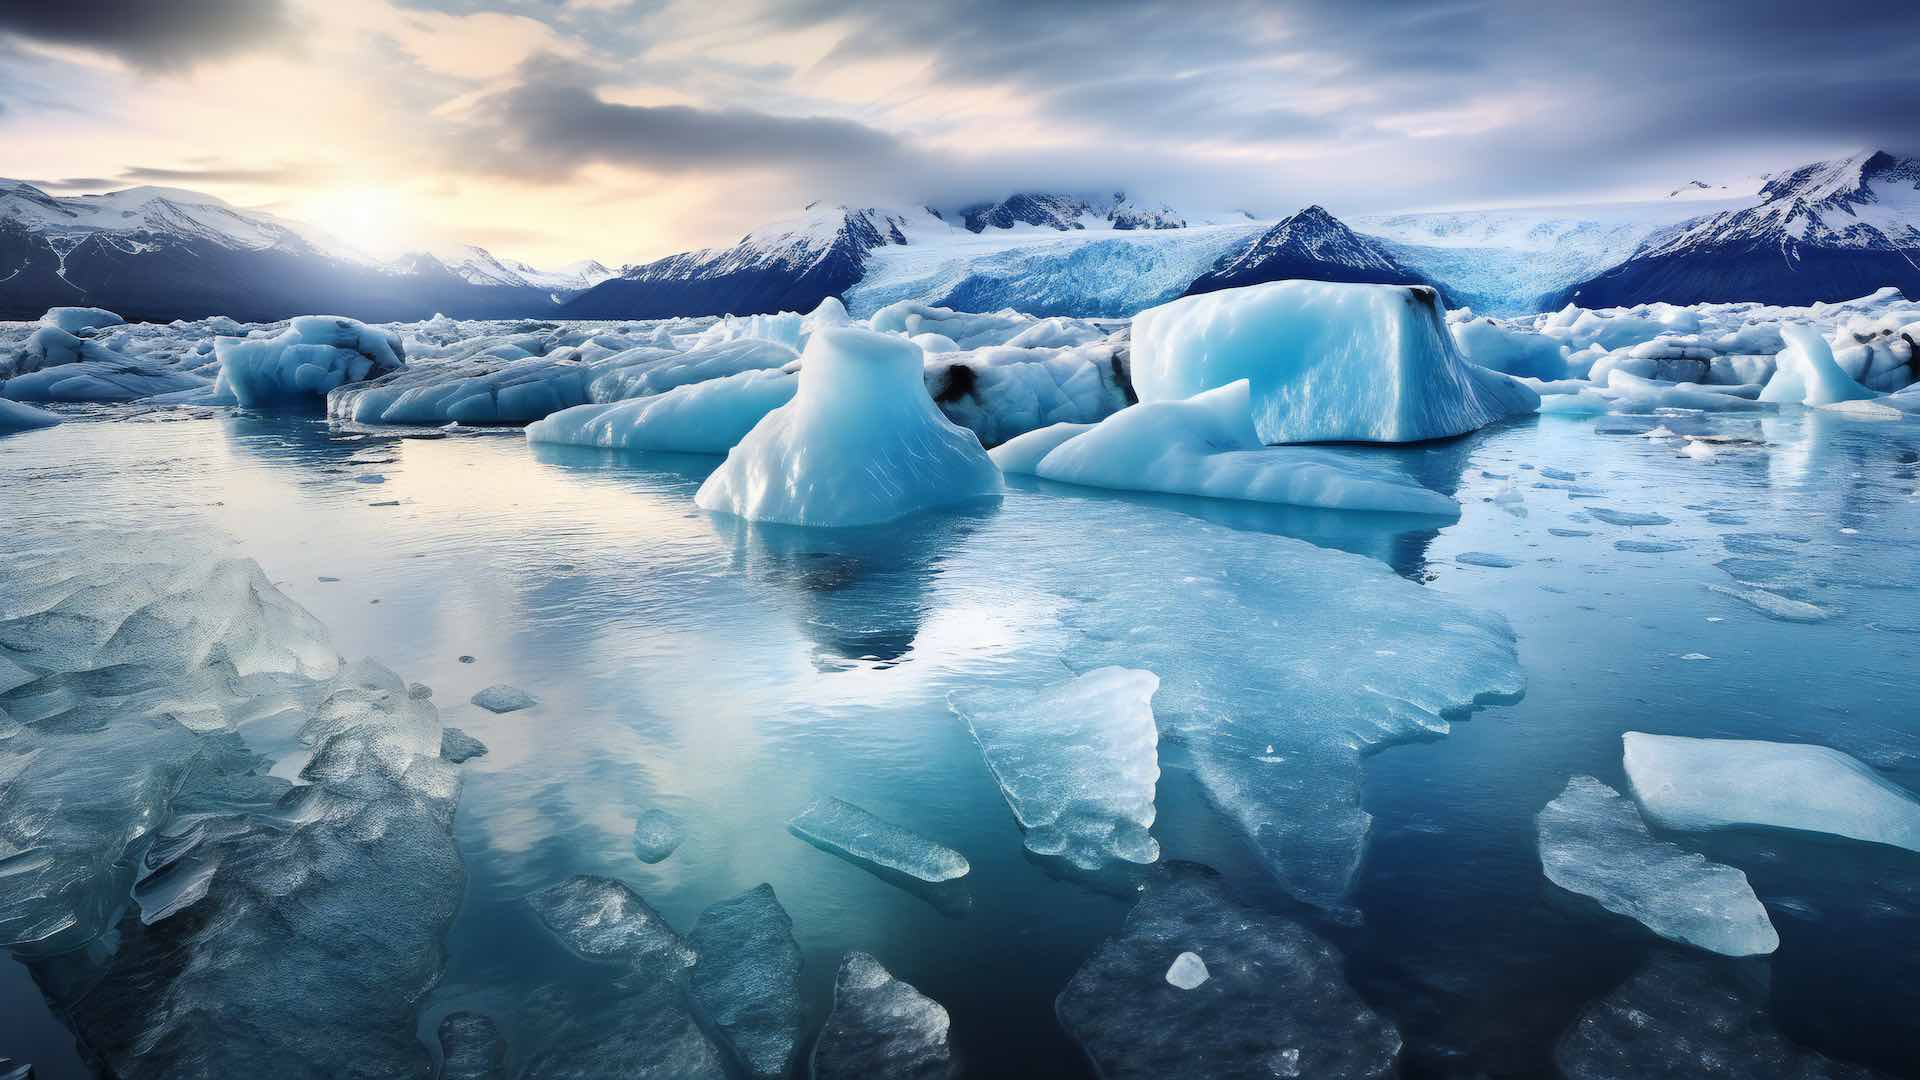 دراسة: ذوبان الغطاء الجليدي في جرينلاند بشكل أسرع بنسبة 20 في المائة